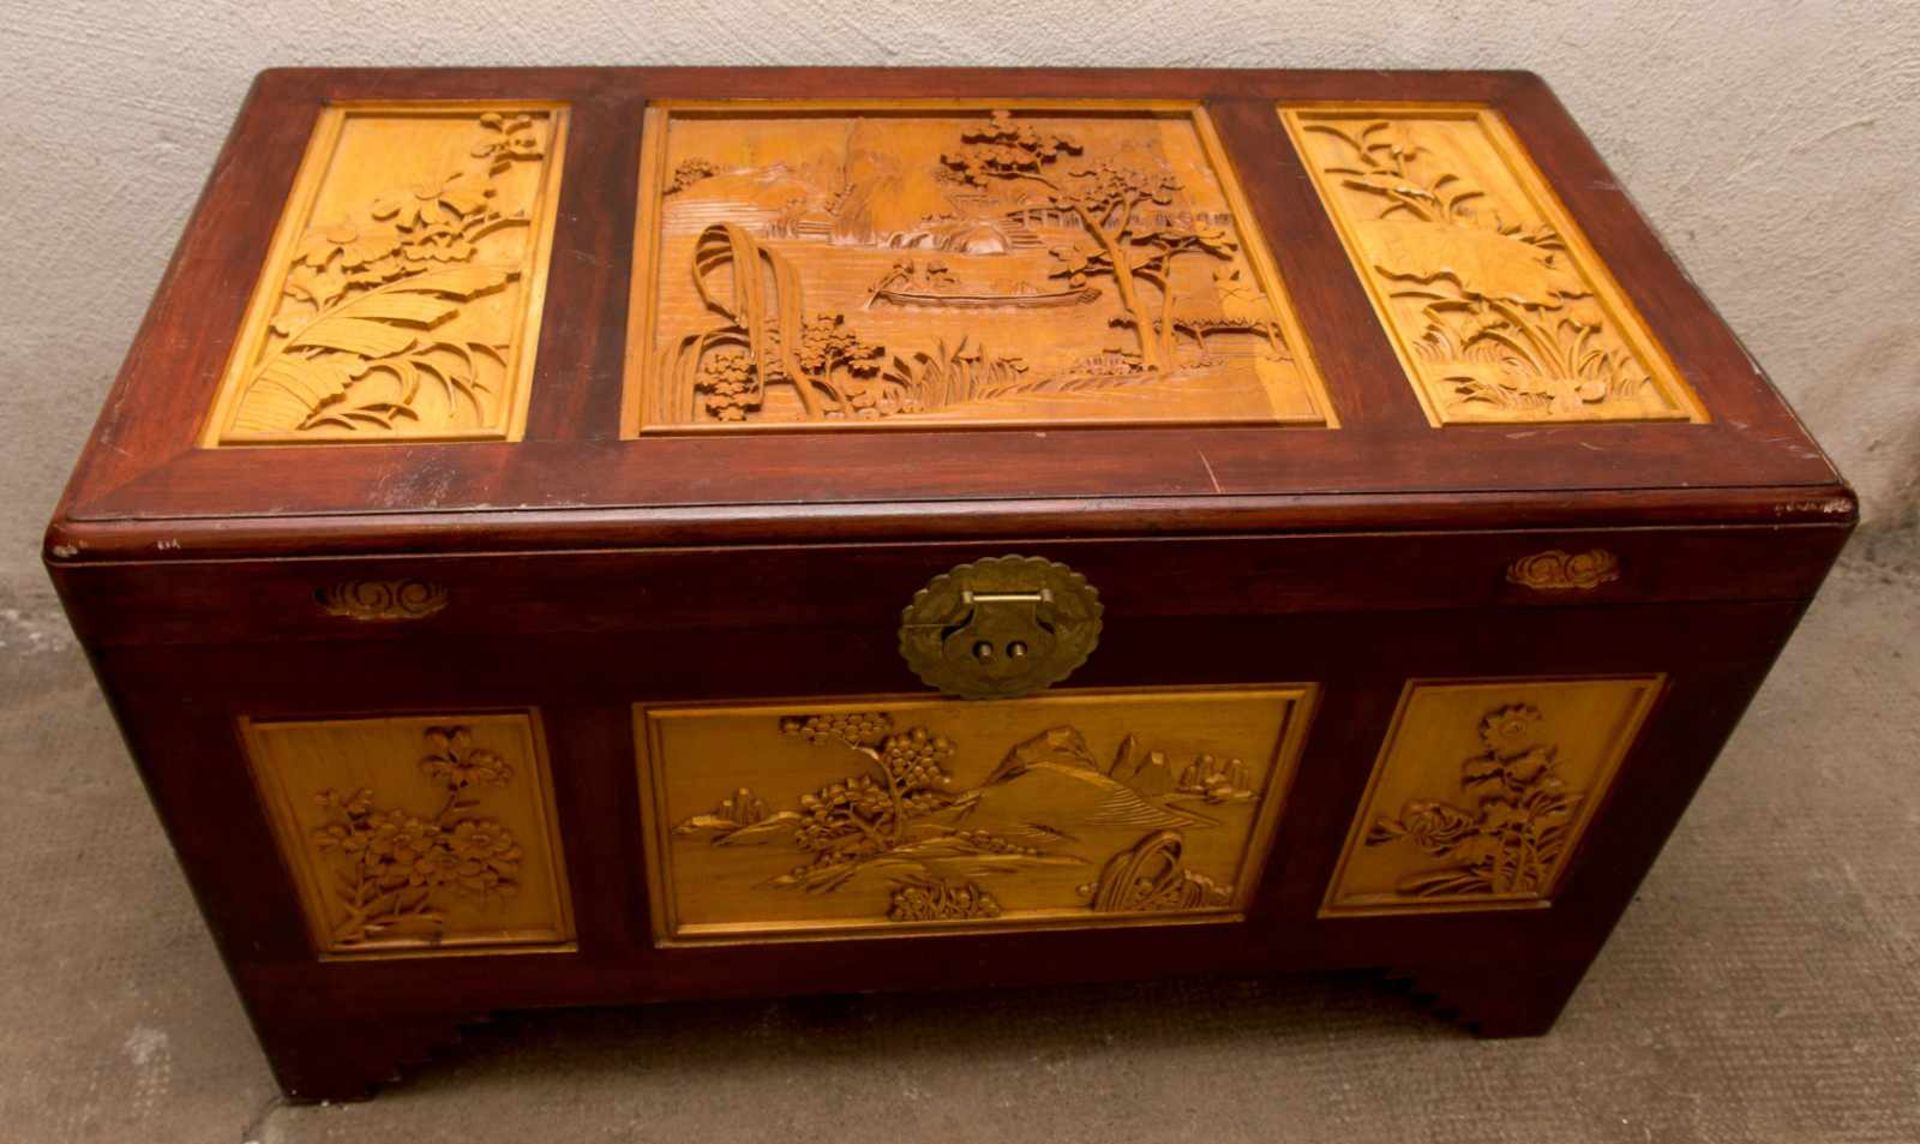 HOLZTRUHE, beschnitztes und lackiertes Holz,Messing, 20. Jahrhundert Truhe im asiatischen Stil,